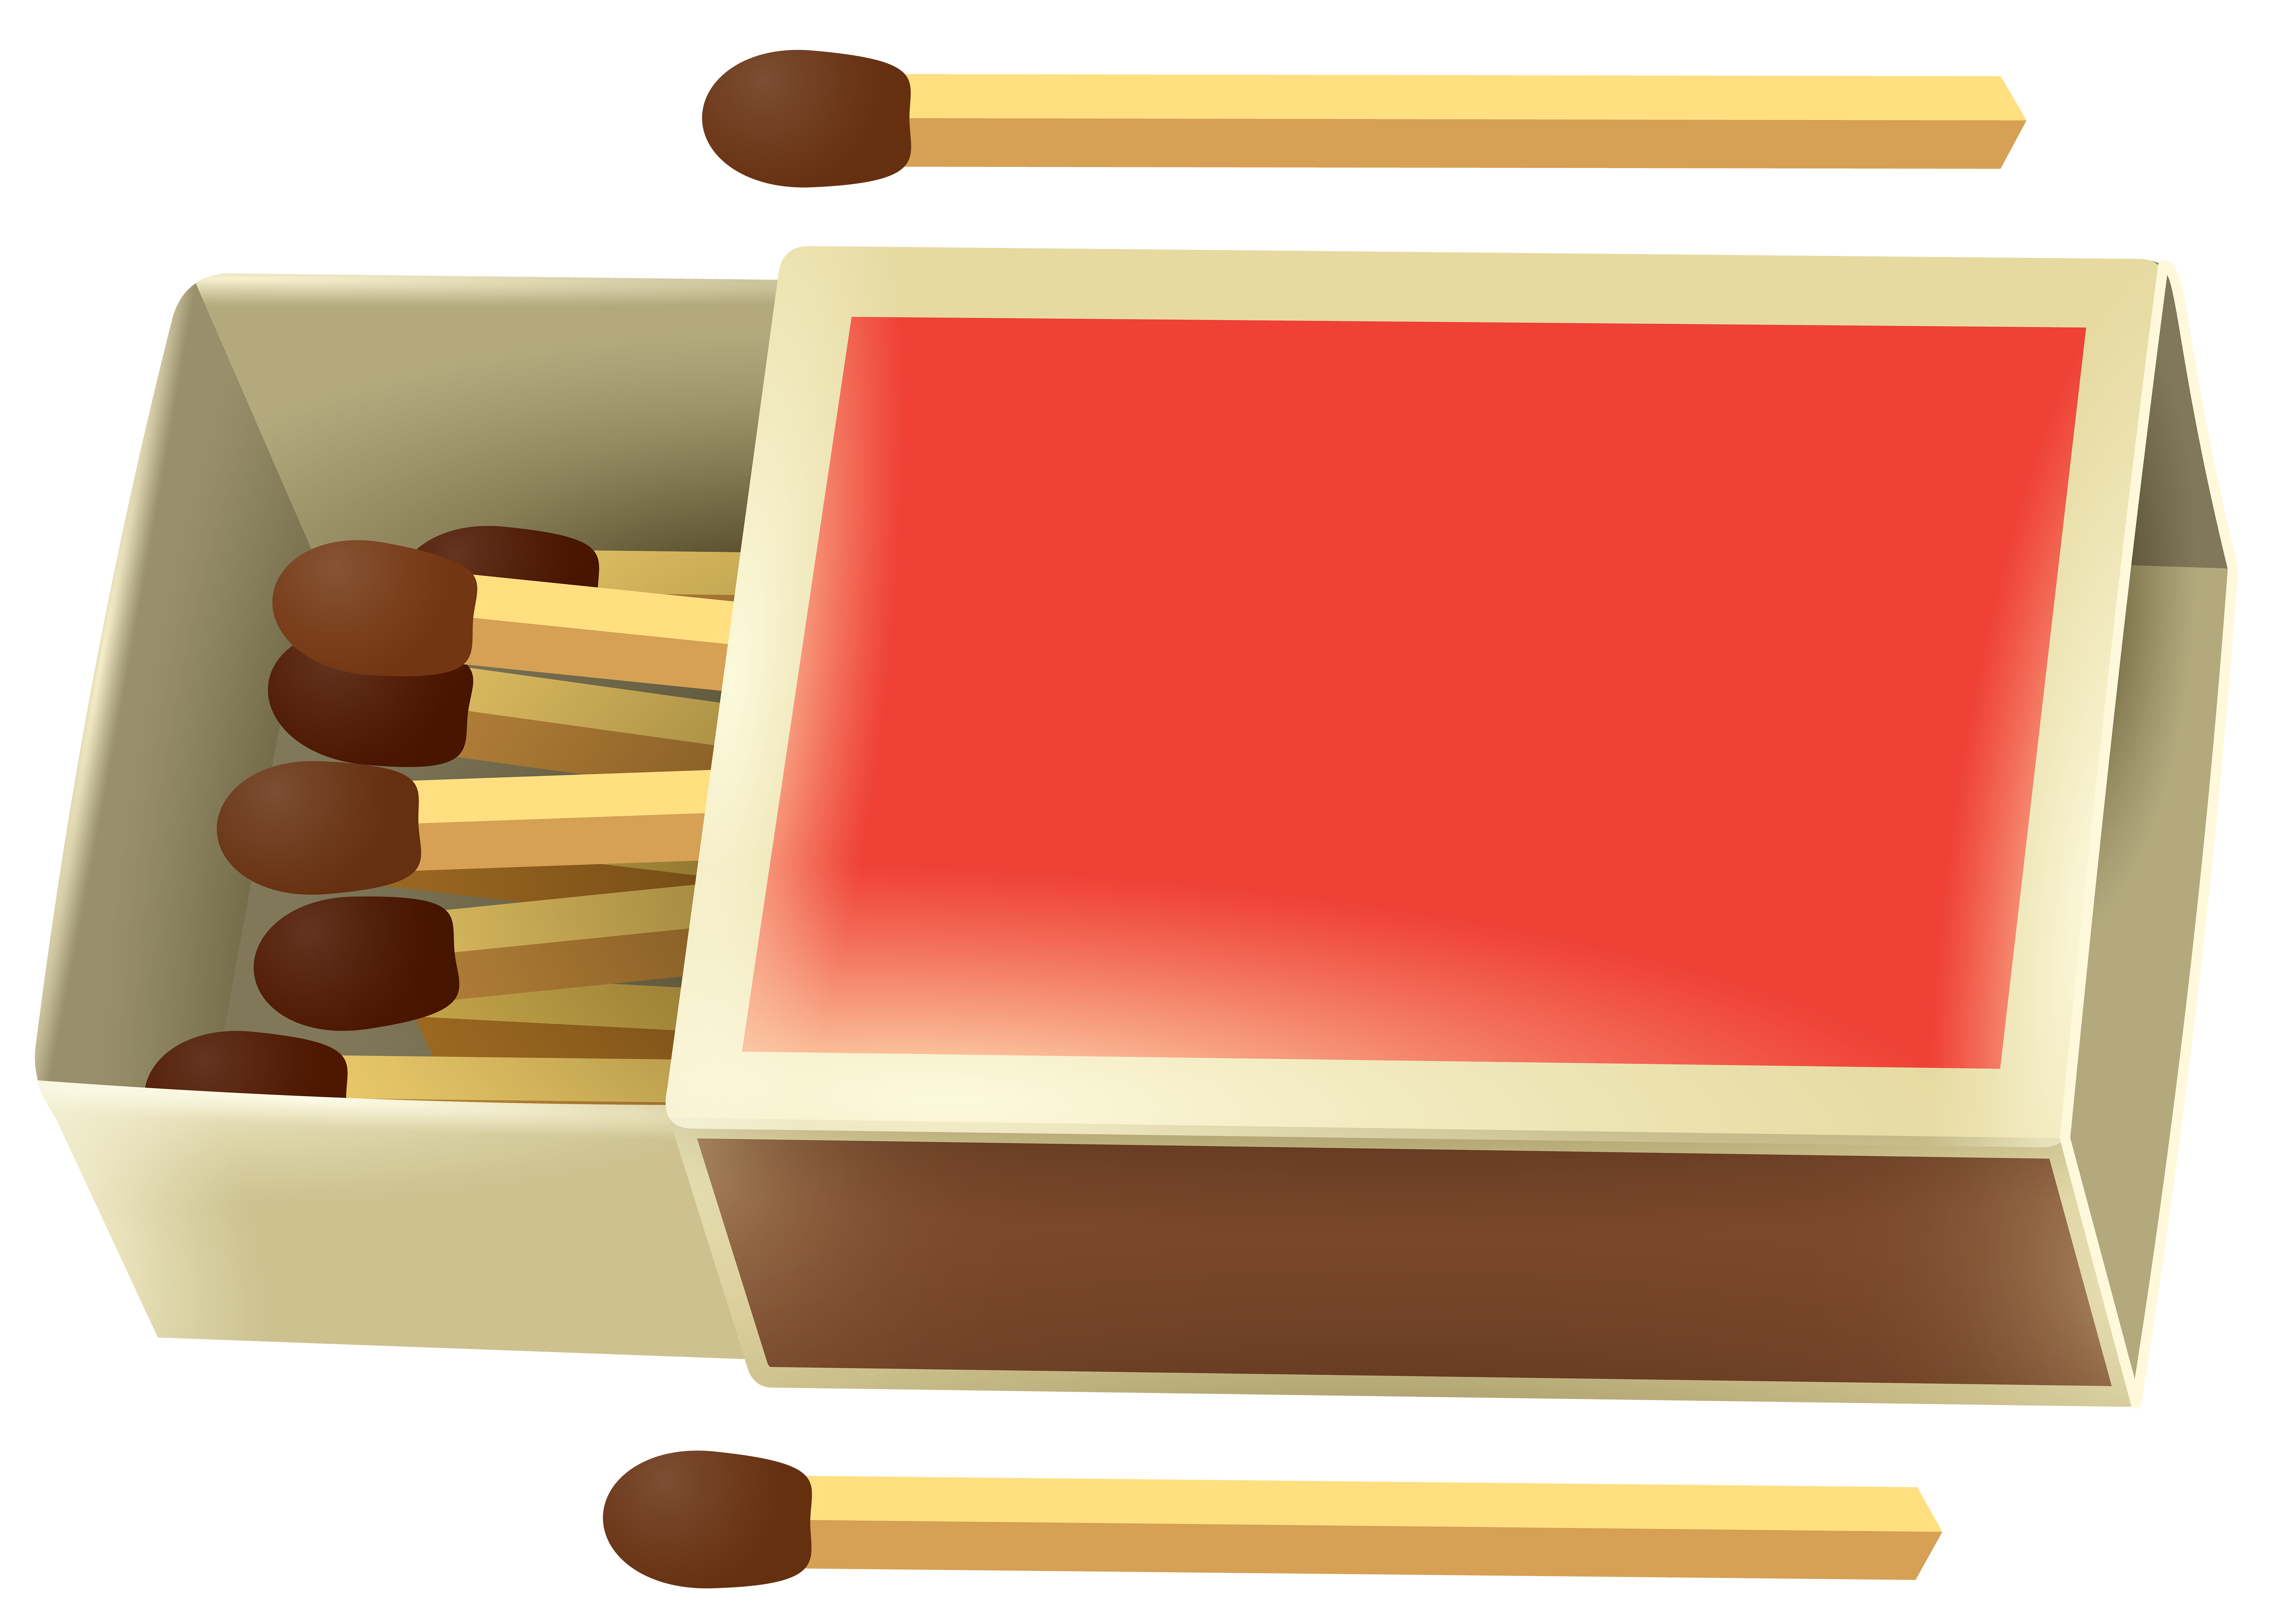 match clipart match box